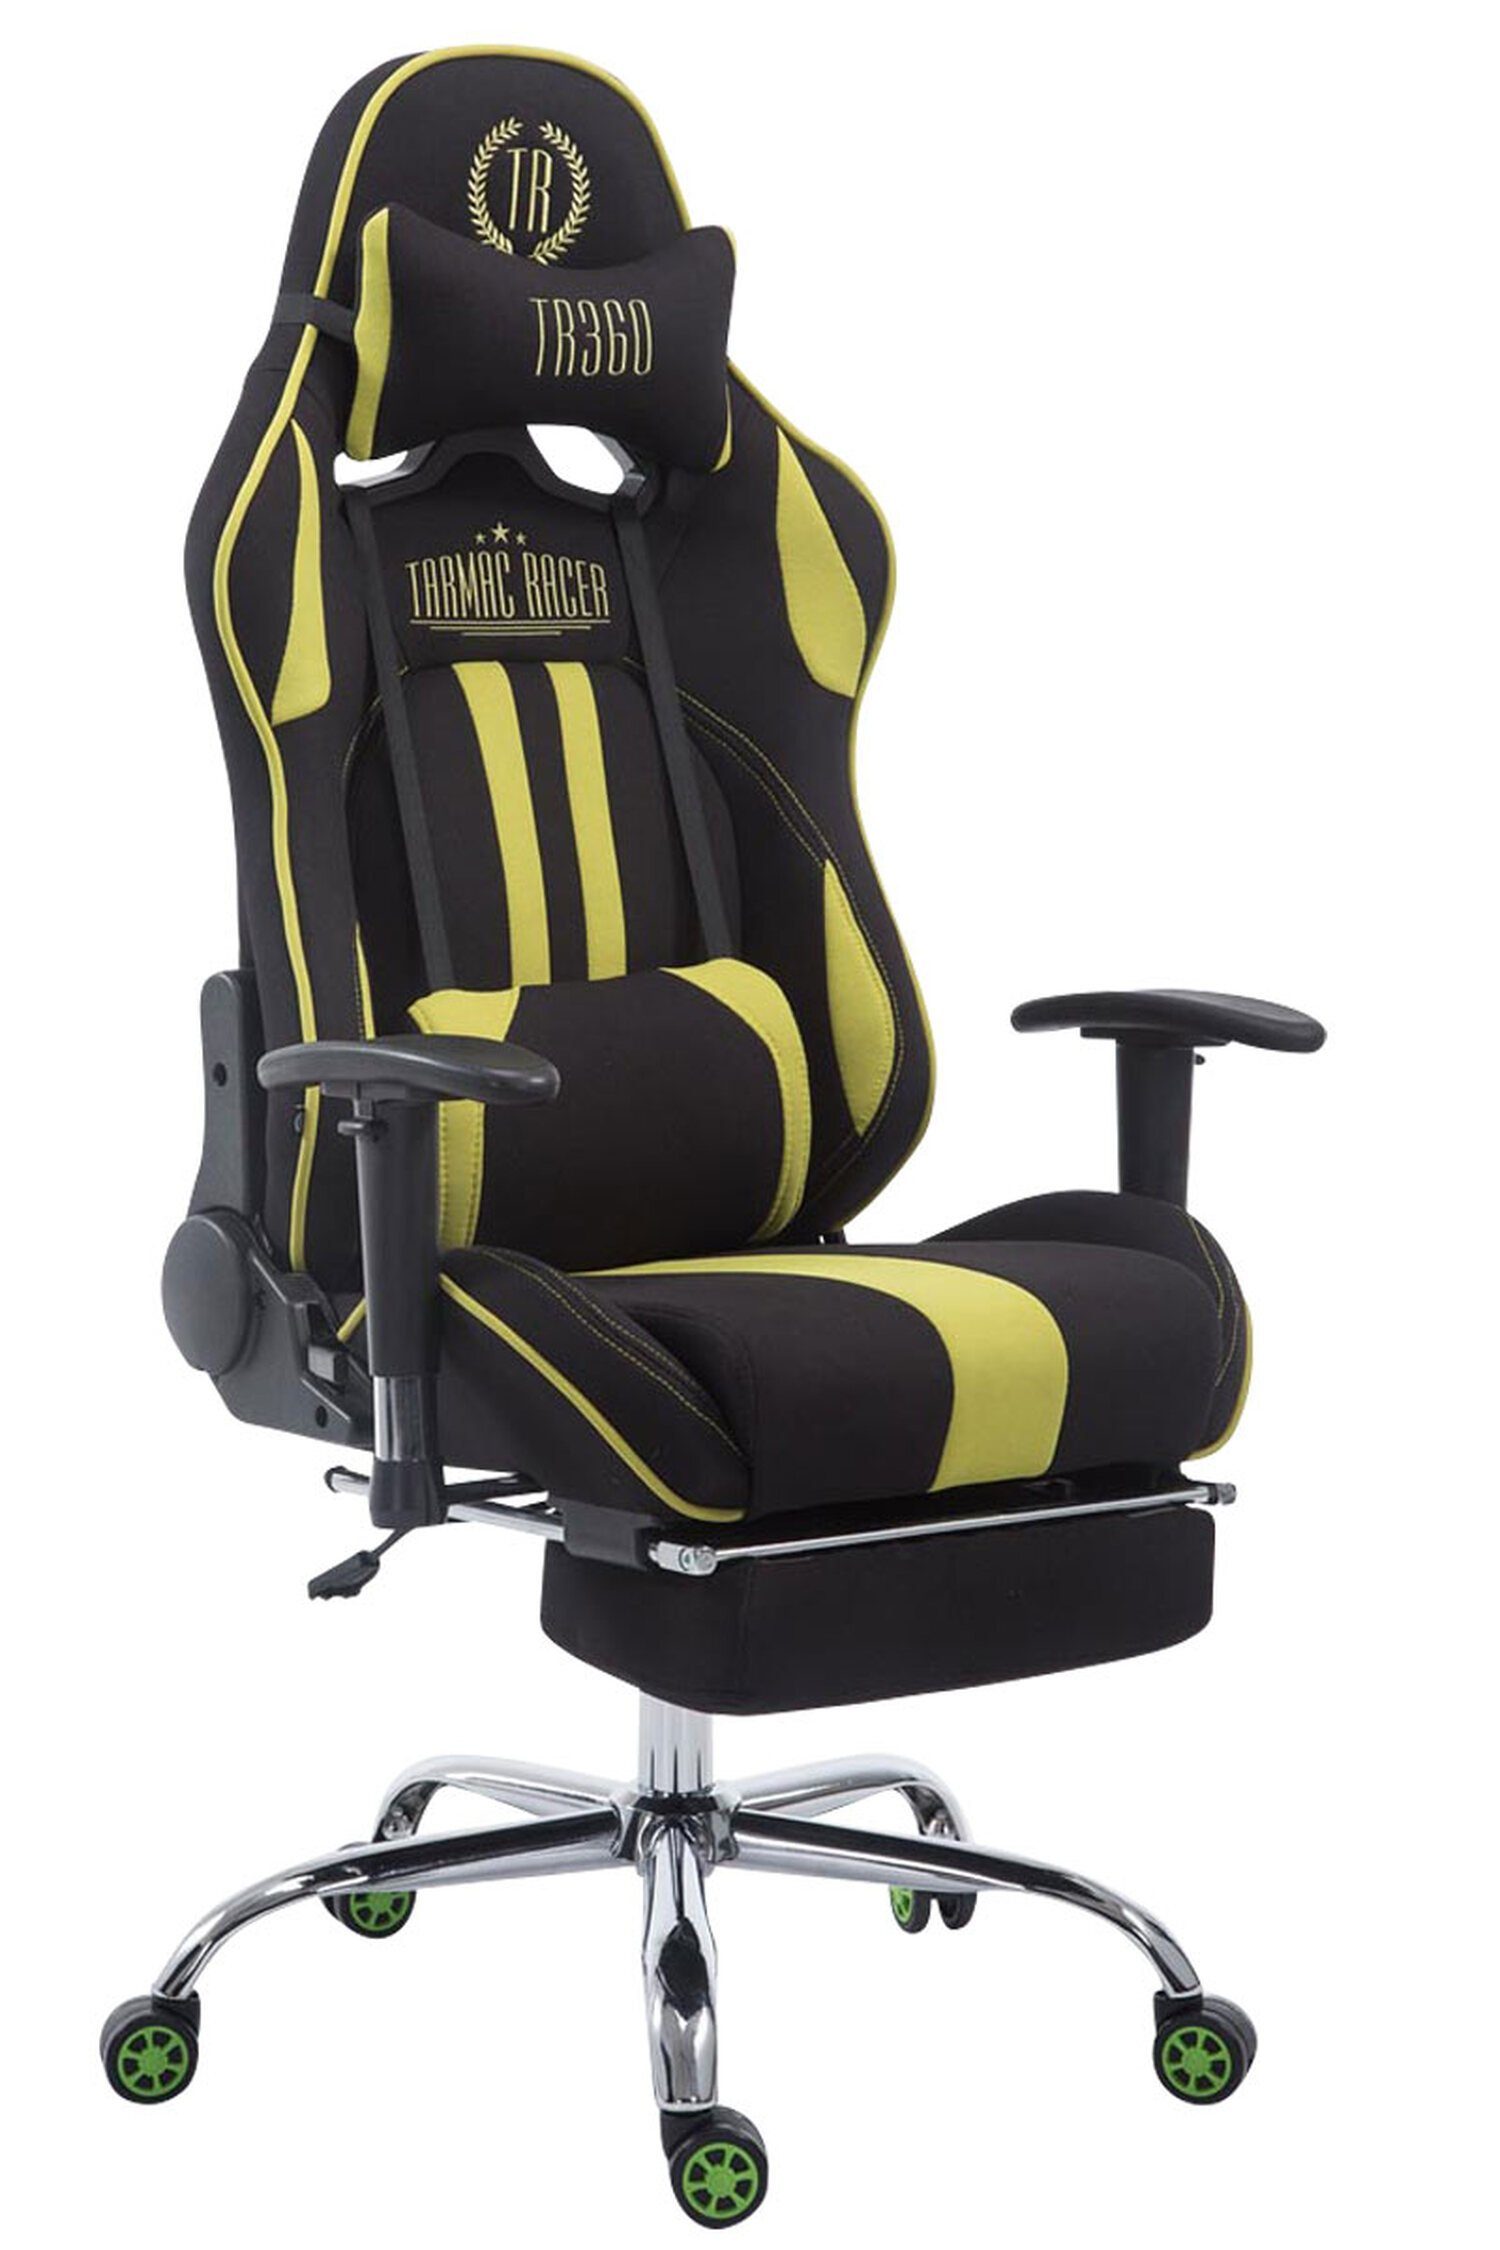 TPFLiving Gaming-Stuhl Limitless-2 mit bequemer Rückenlehne - höhenverstellbar - 360° drehbar (Schreibtischstuhl, Drehstuhl, Gamingstuhl, Racingstuhl, Chefsessel), Gestell: Metall chrom - Sitzfläche: Stoff schwarz/grün